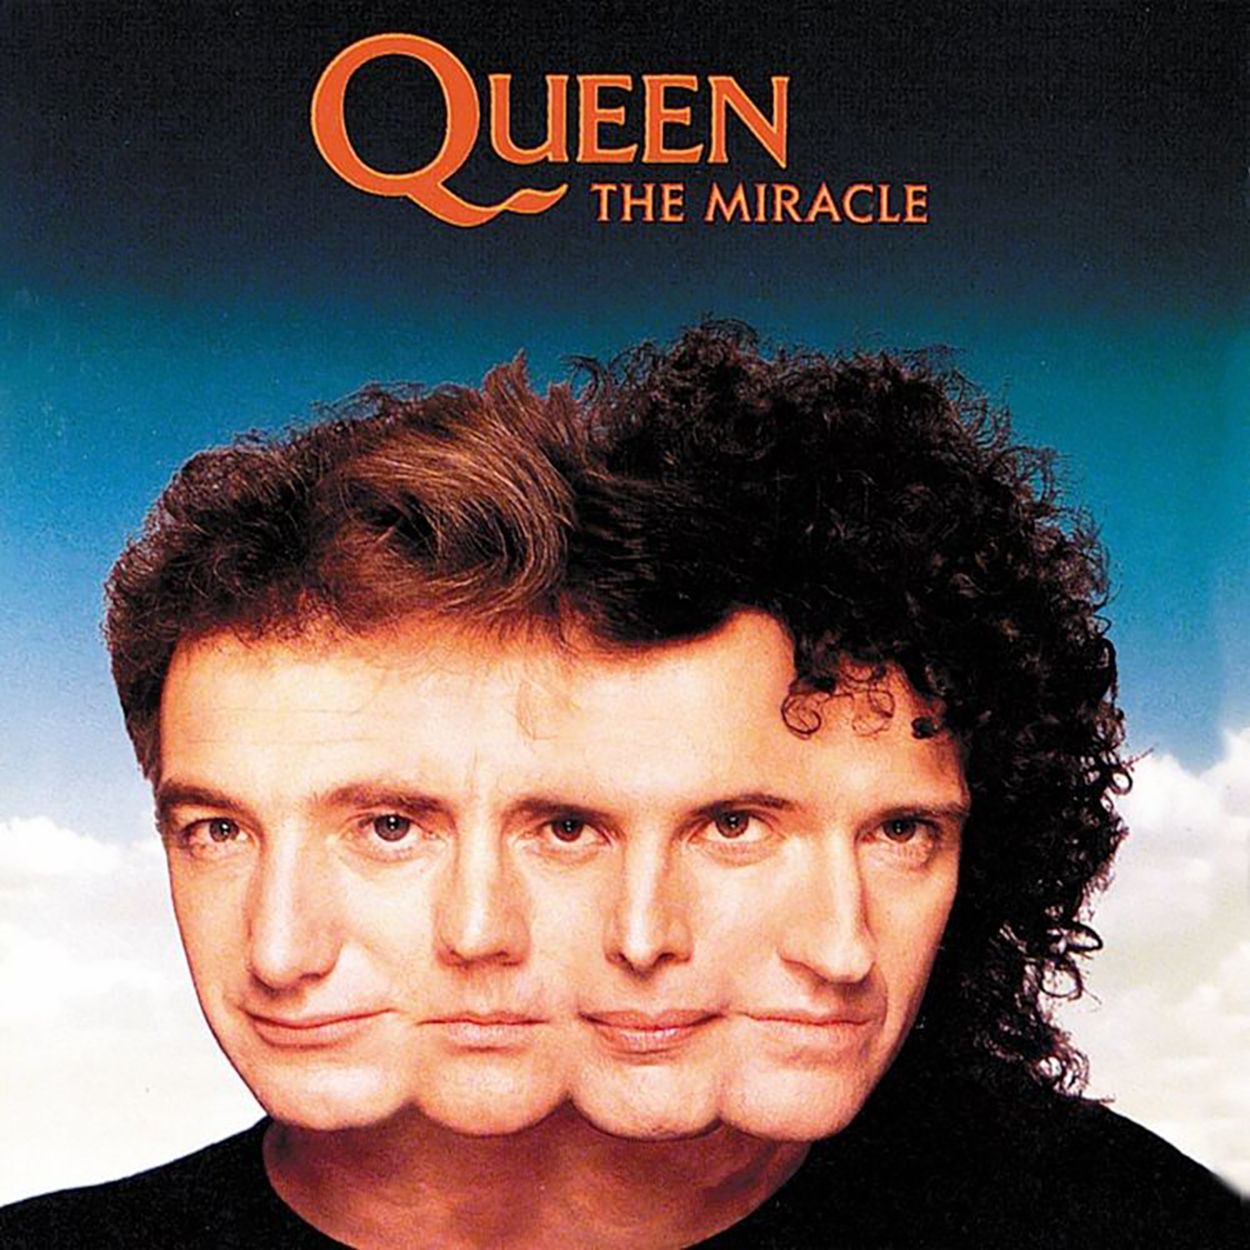 Sale a la luz una canción inédita de Queen con la voz de Freddie Mercury